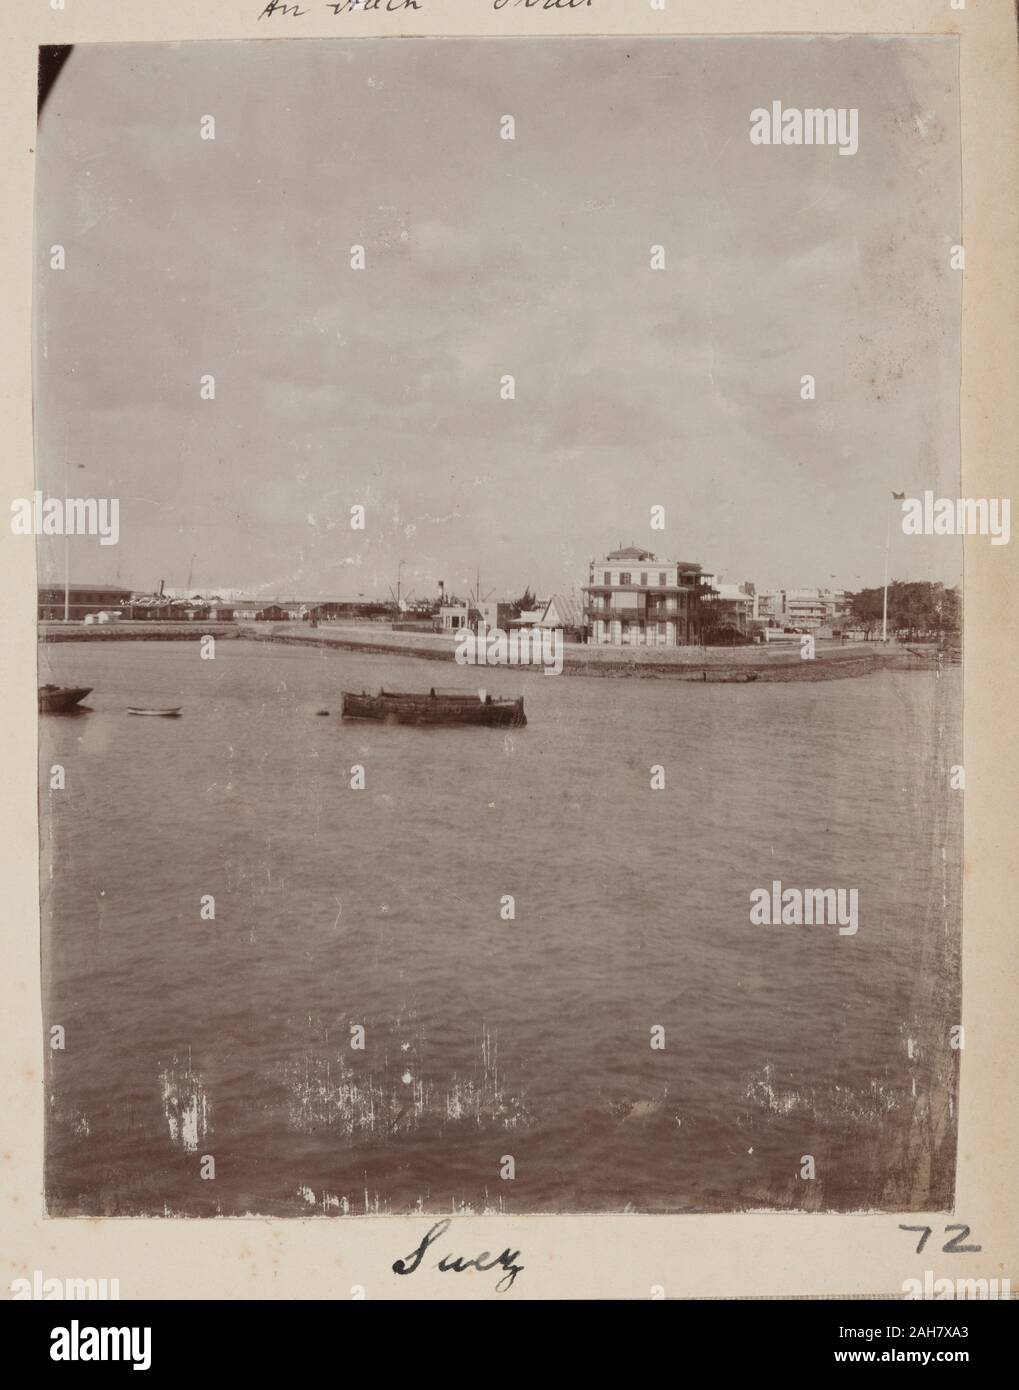 Egypt, View of buildings seen across the Suez canalOriginal manuscript caption: Suez, circa 1910. 2005/078/1/72. Stock Photo